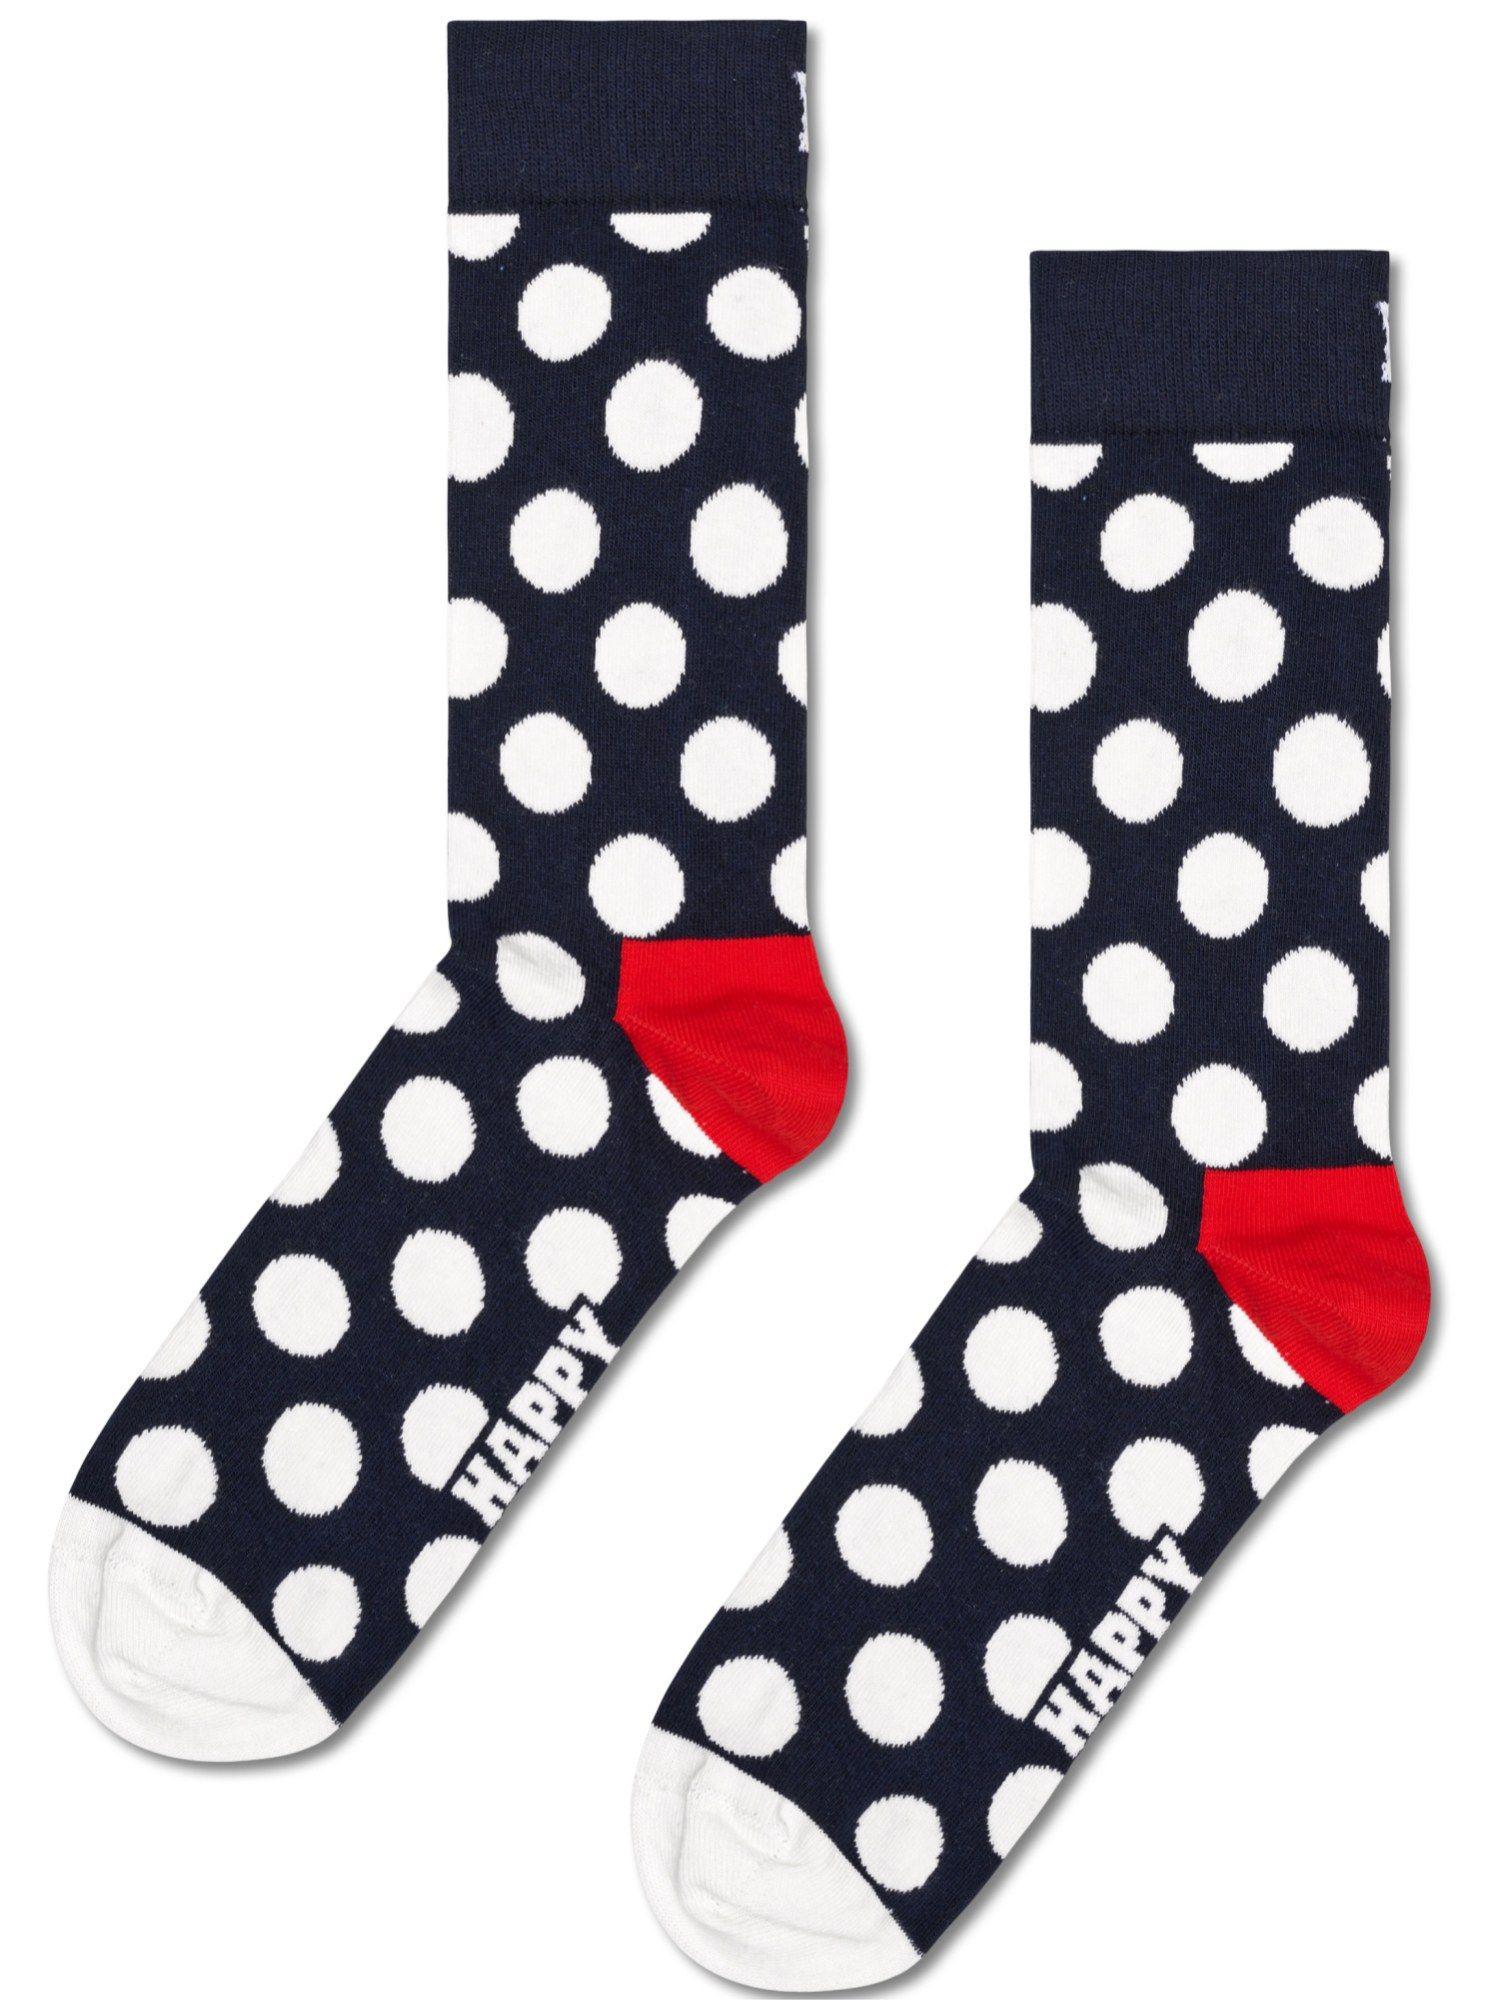 multi-color woven unisex socks (pack of 2)